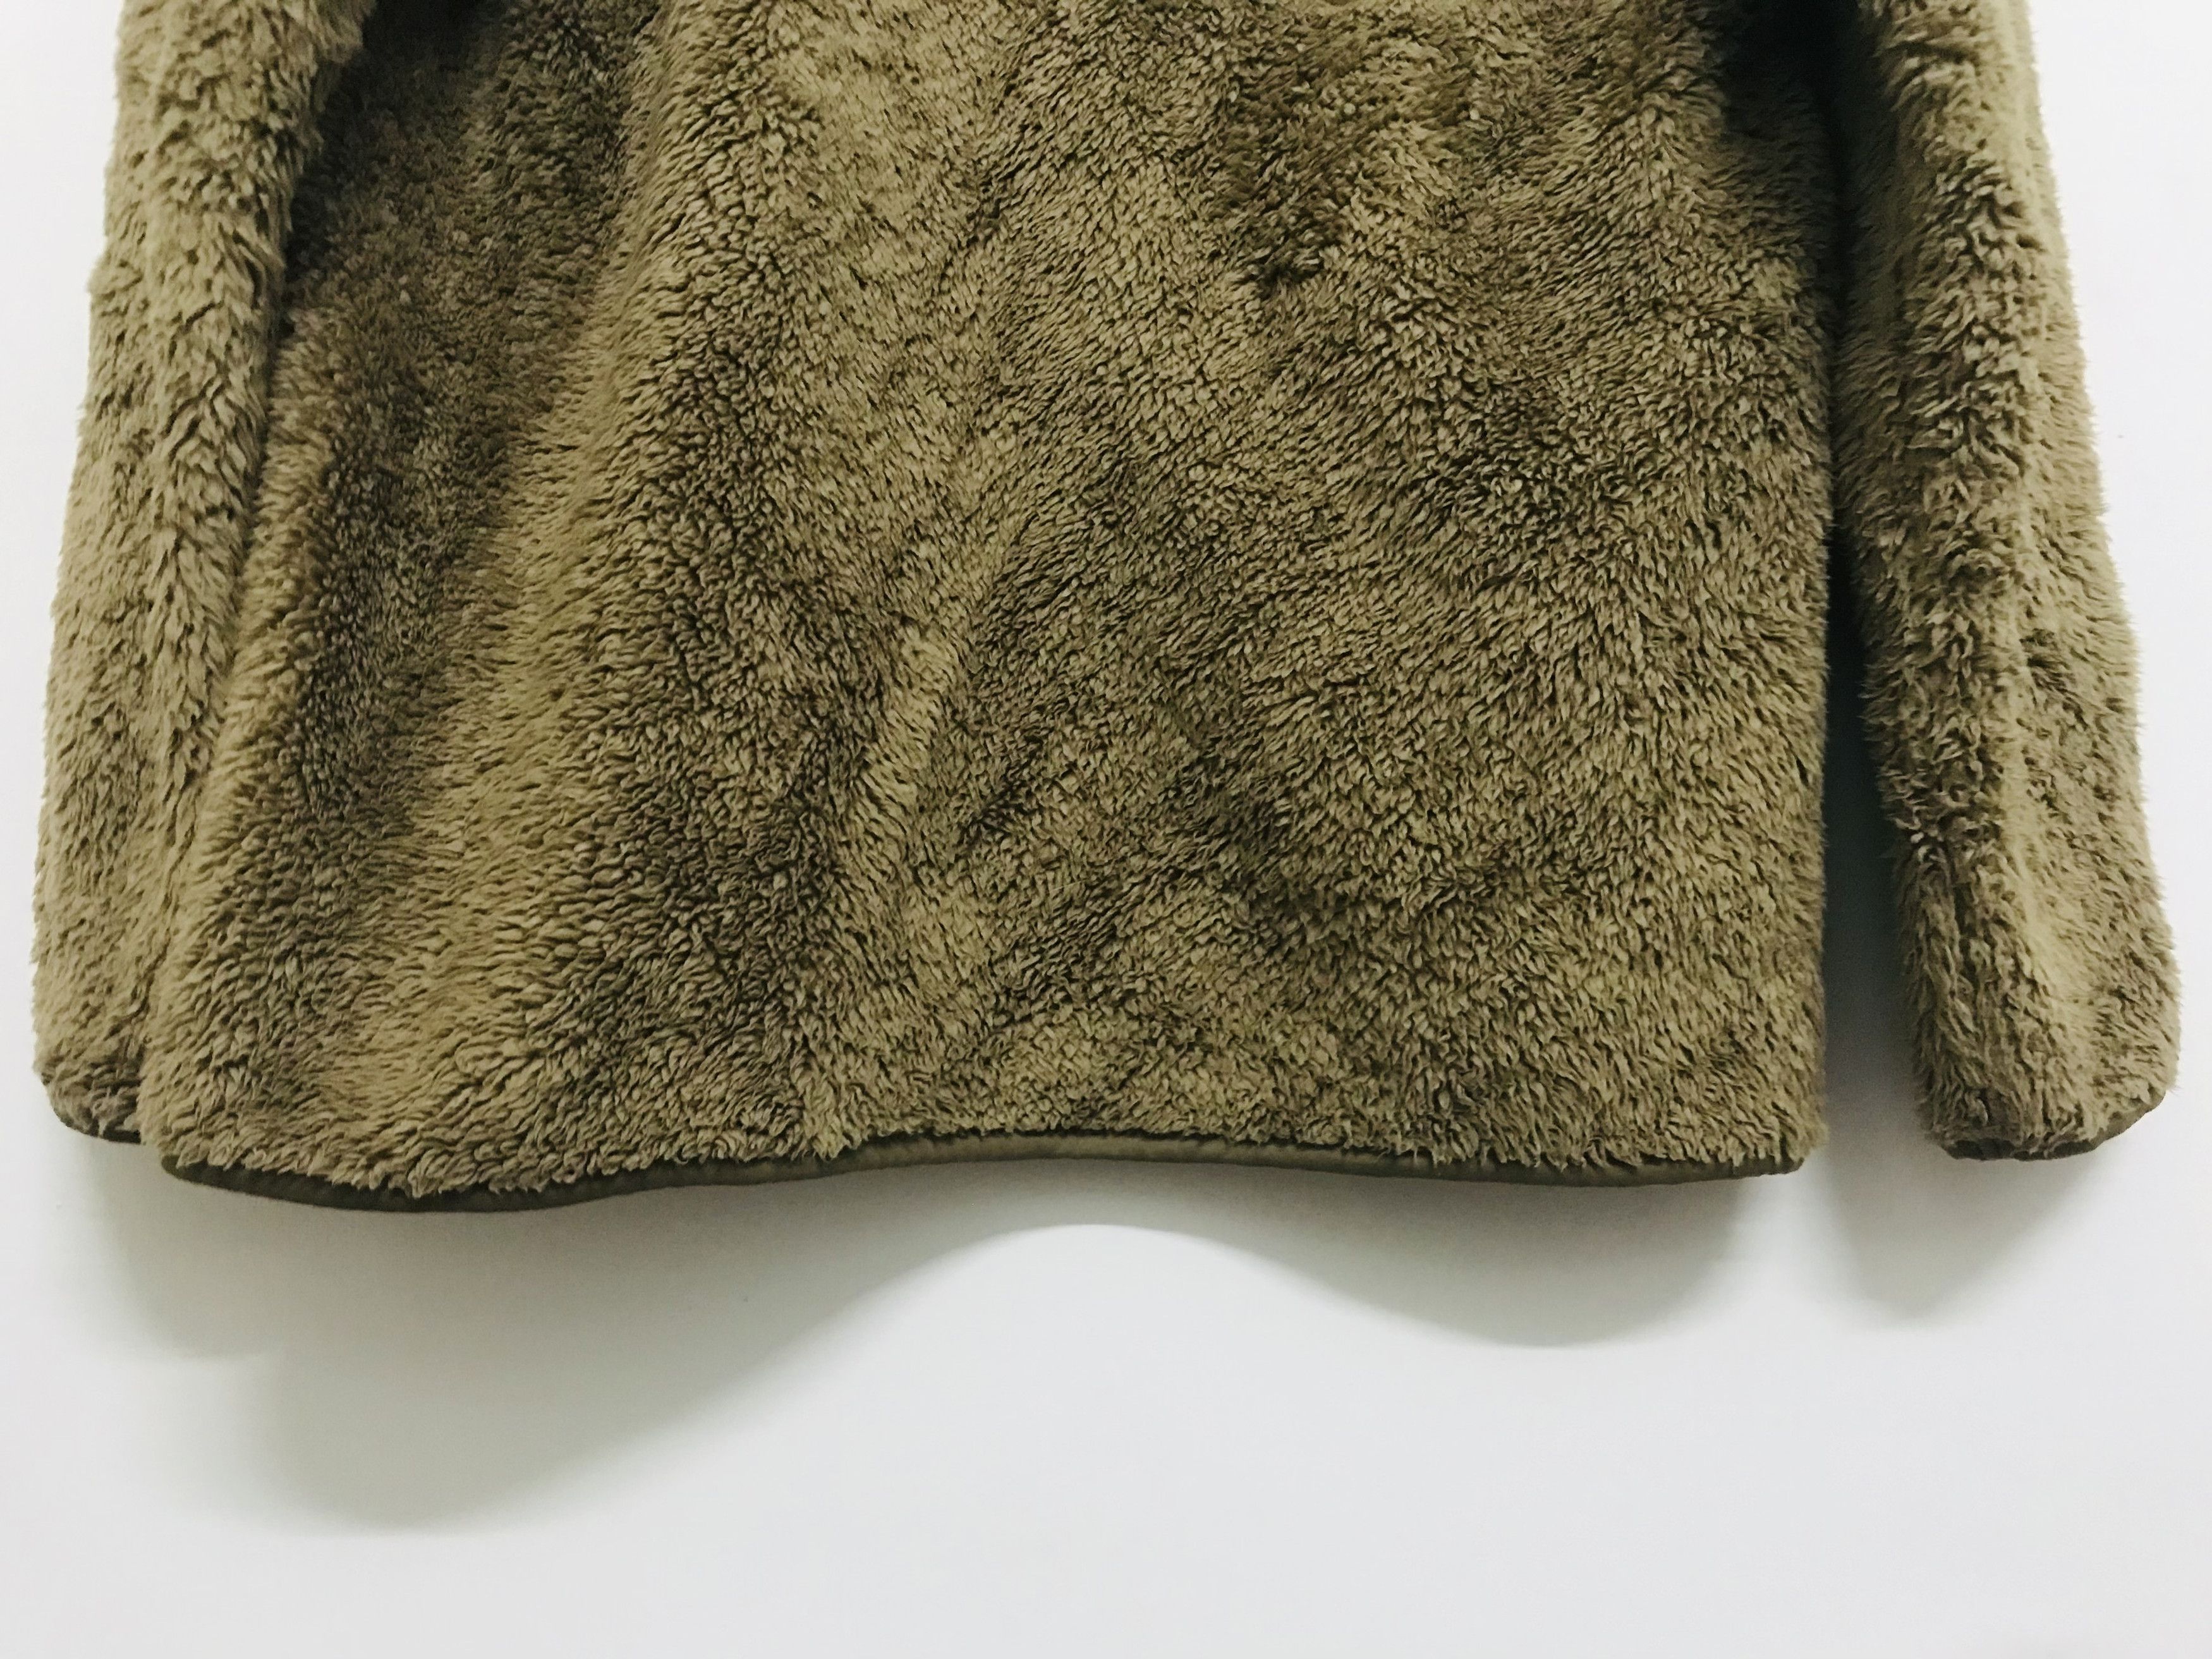 Uniqlo Engineered Garments Fleece Sweater - 10